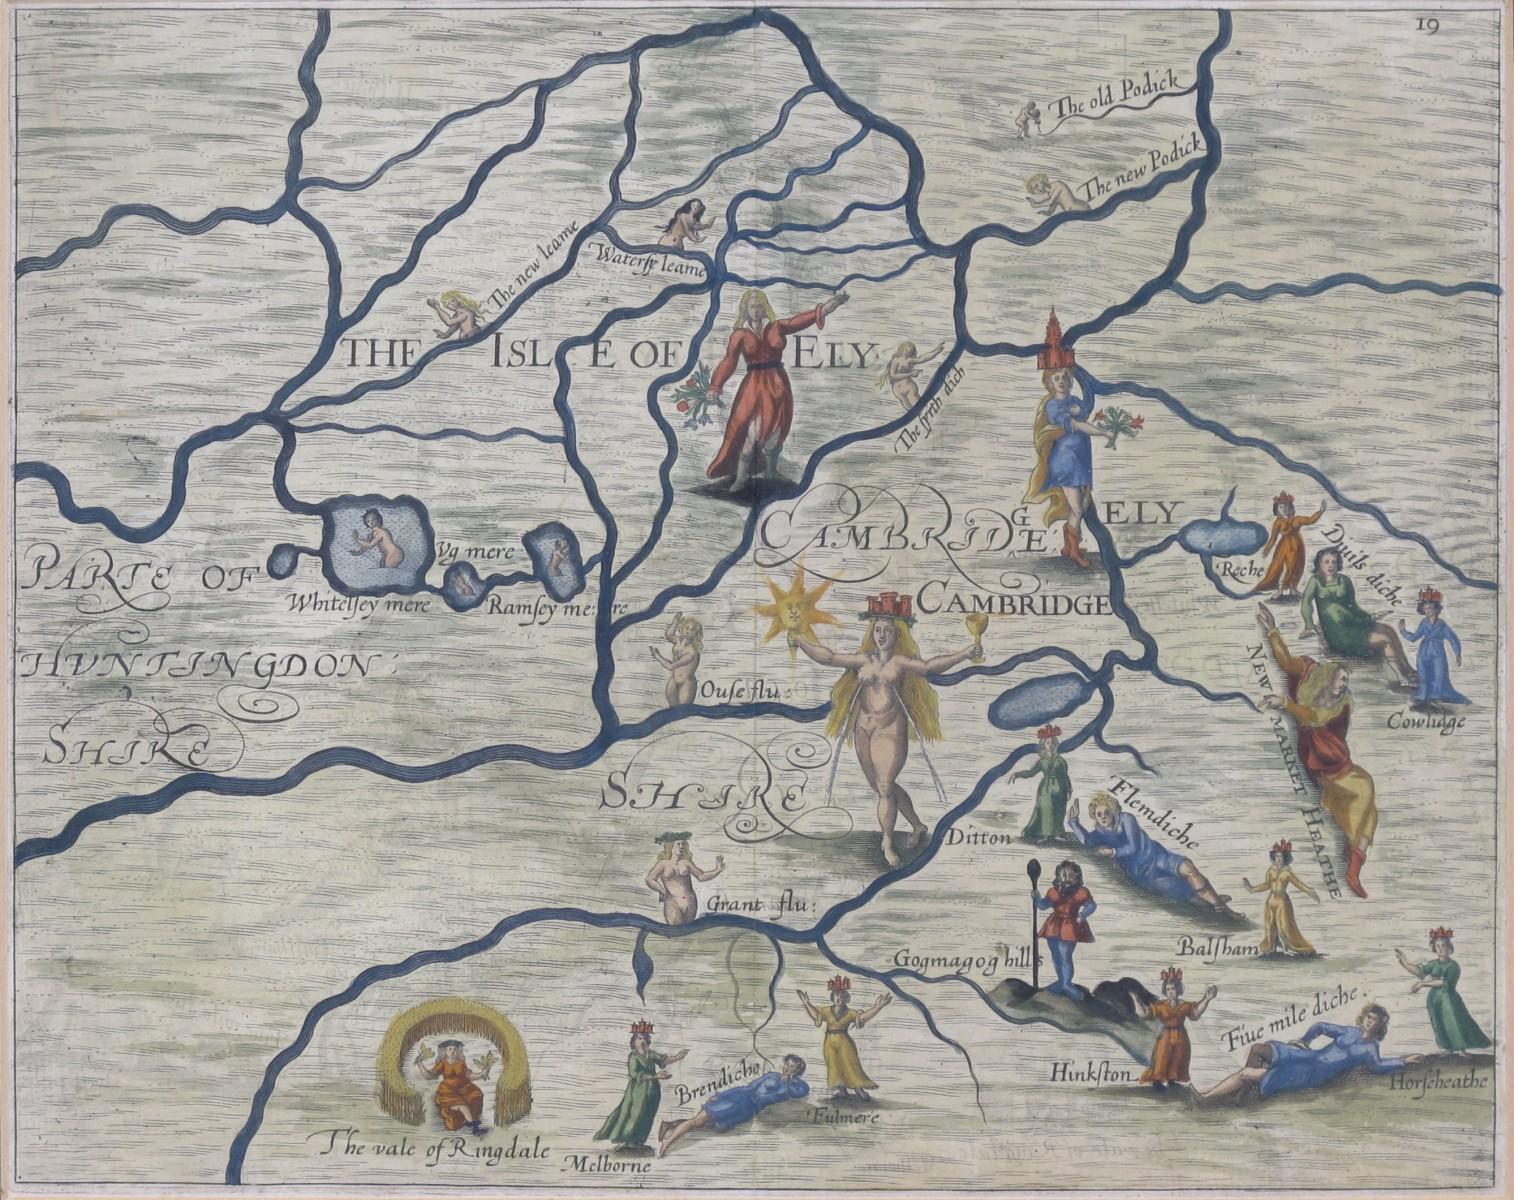 Besuchen Sie unsere anderen Artikel, um eine große Auswahl an Ansichten von Oxford und Cambridge zu sehen.

Michael Drayton (1563-1631) 
Karte von Cambridge und der Isle of Ely (1622), gestochen von William Hole für Draytons Poly Olbion
London